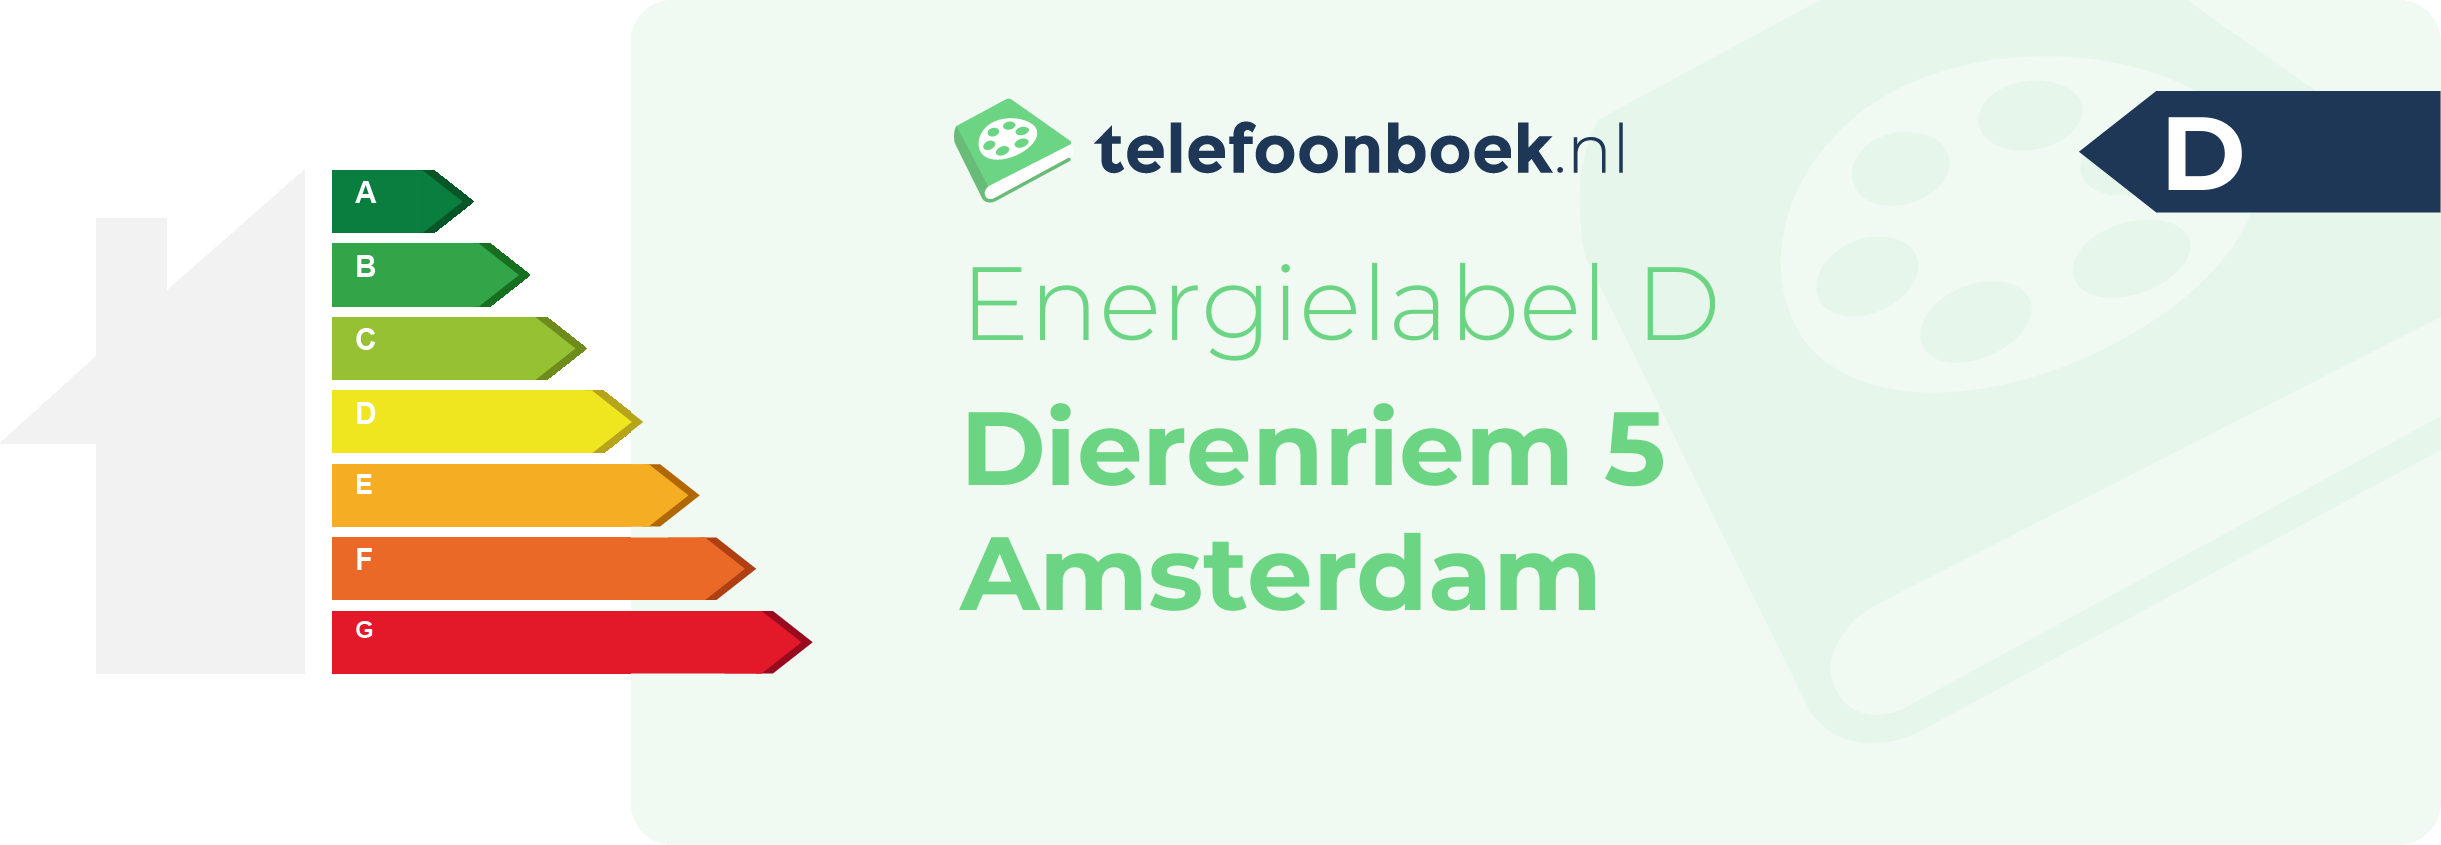 Energielabel Dierenriem 5 Amsterdam